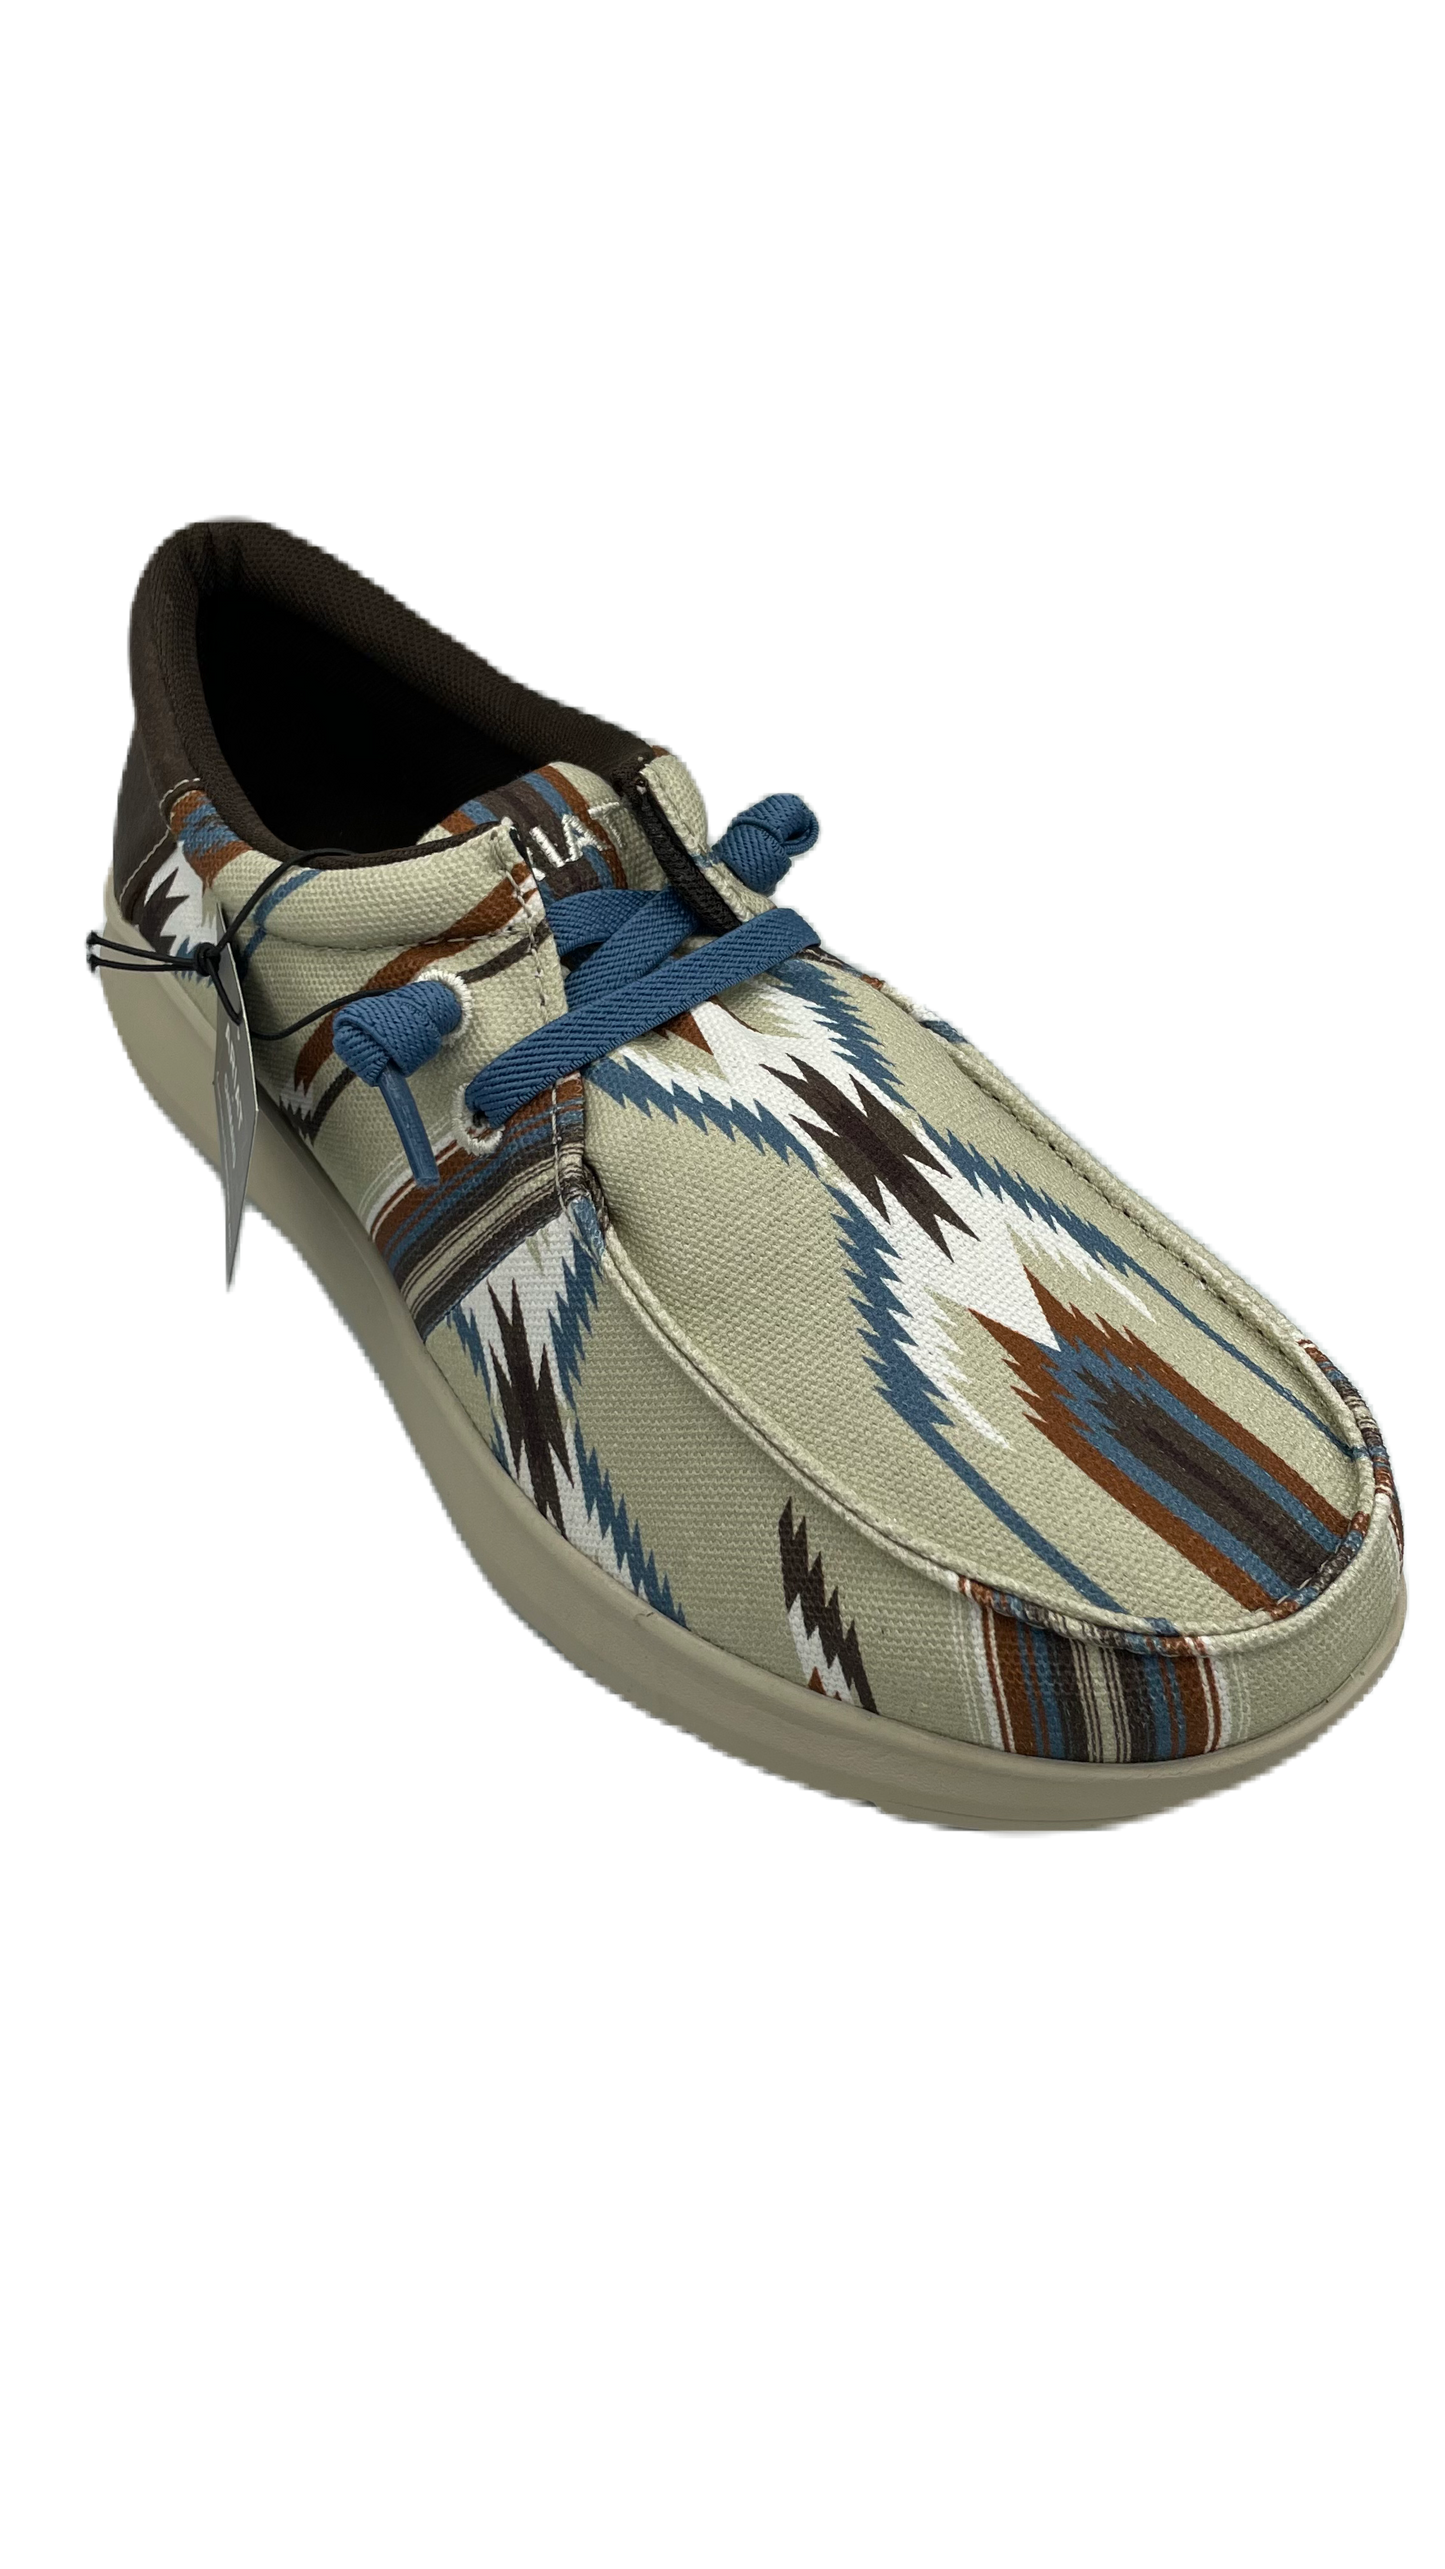 Zapato Ariat chimayo caballero con diseño azteca en colores claro